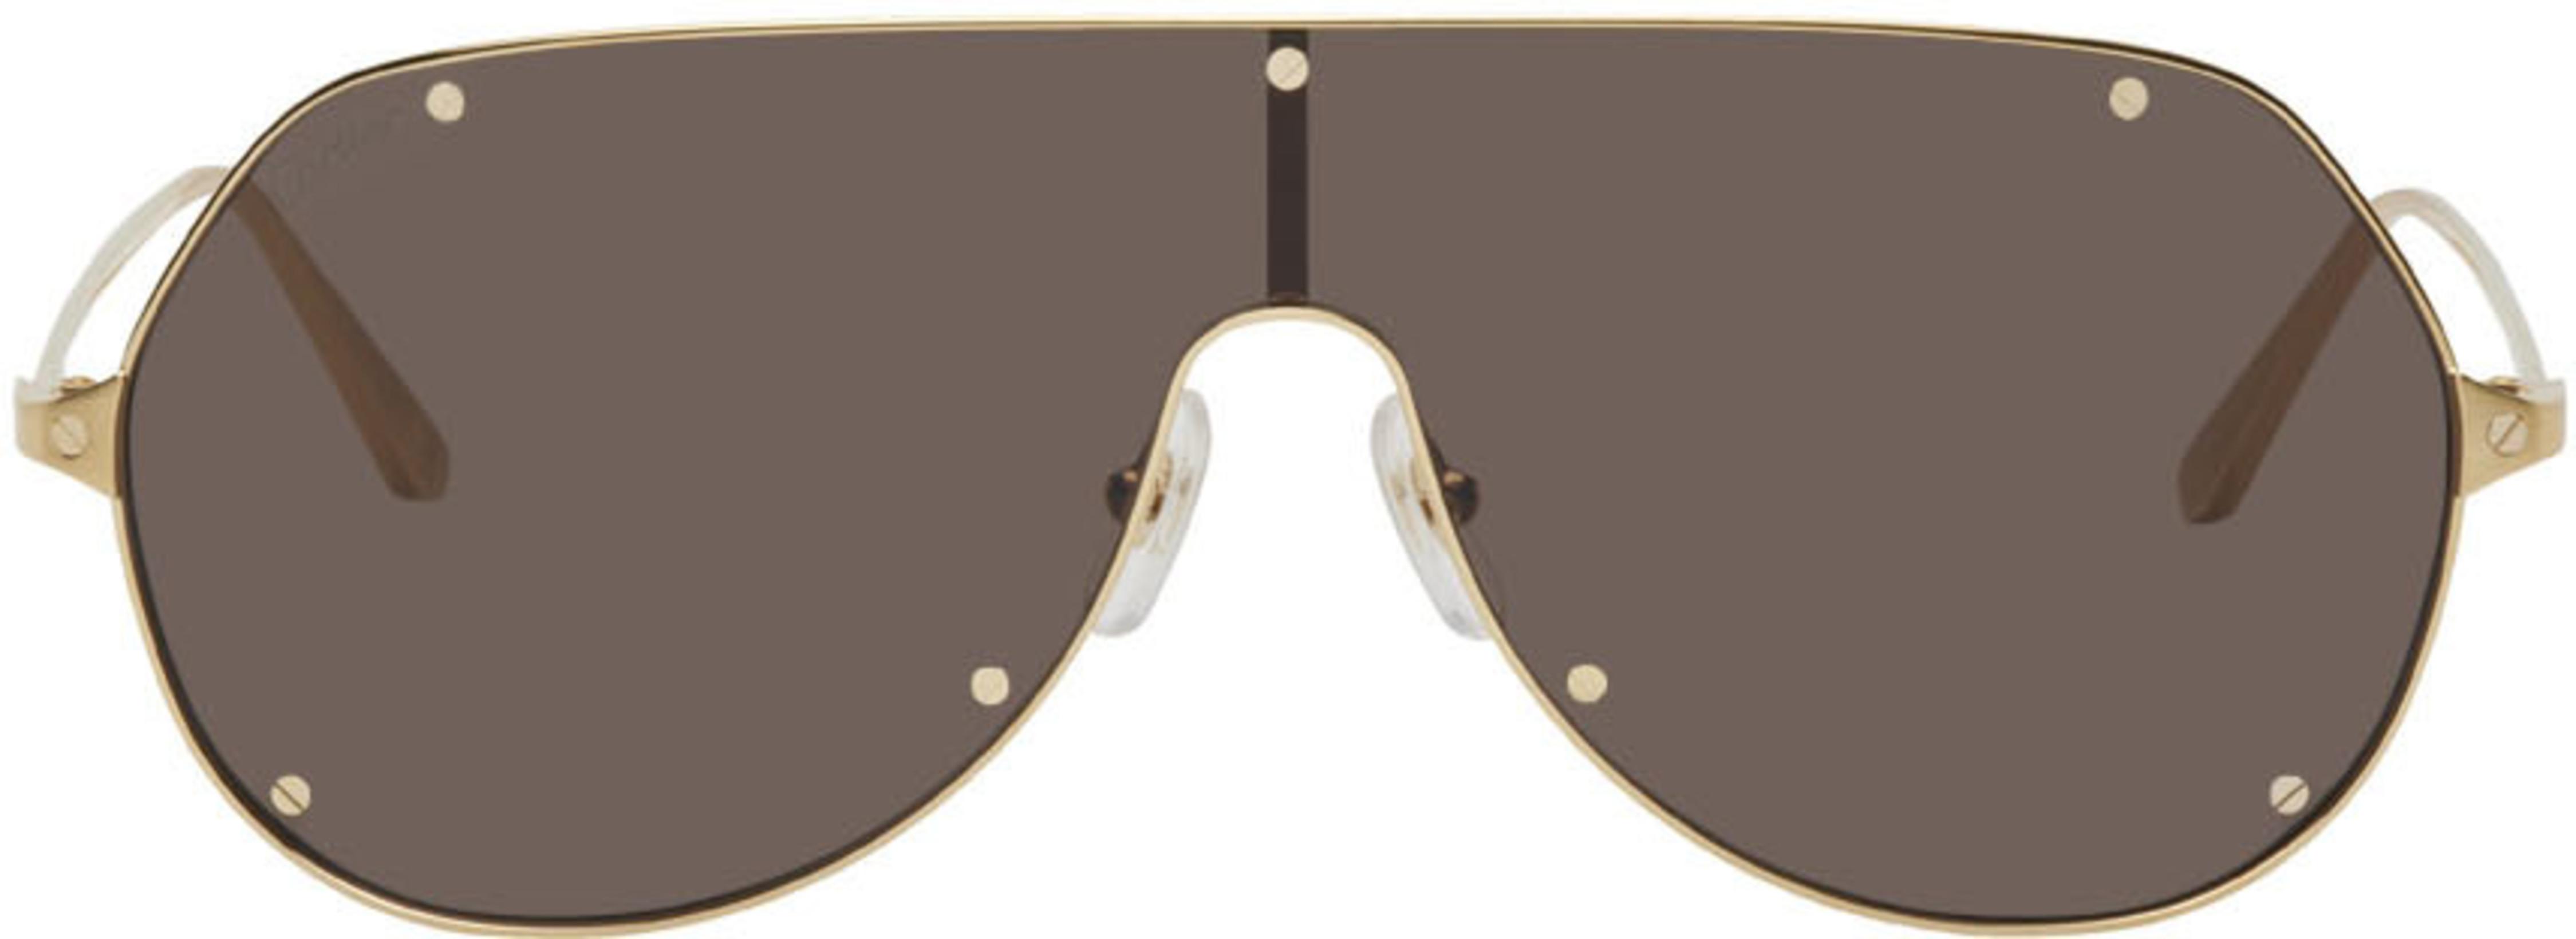 Gold Santos de Cartier Aviator Sunglasses by CARTIER